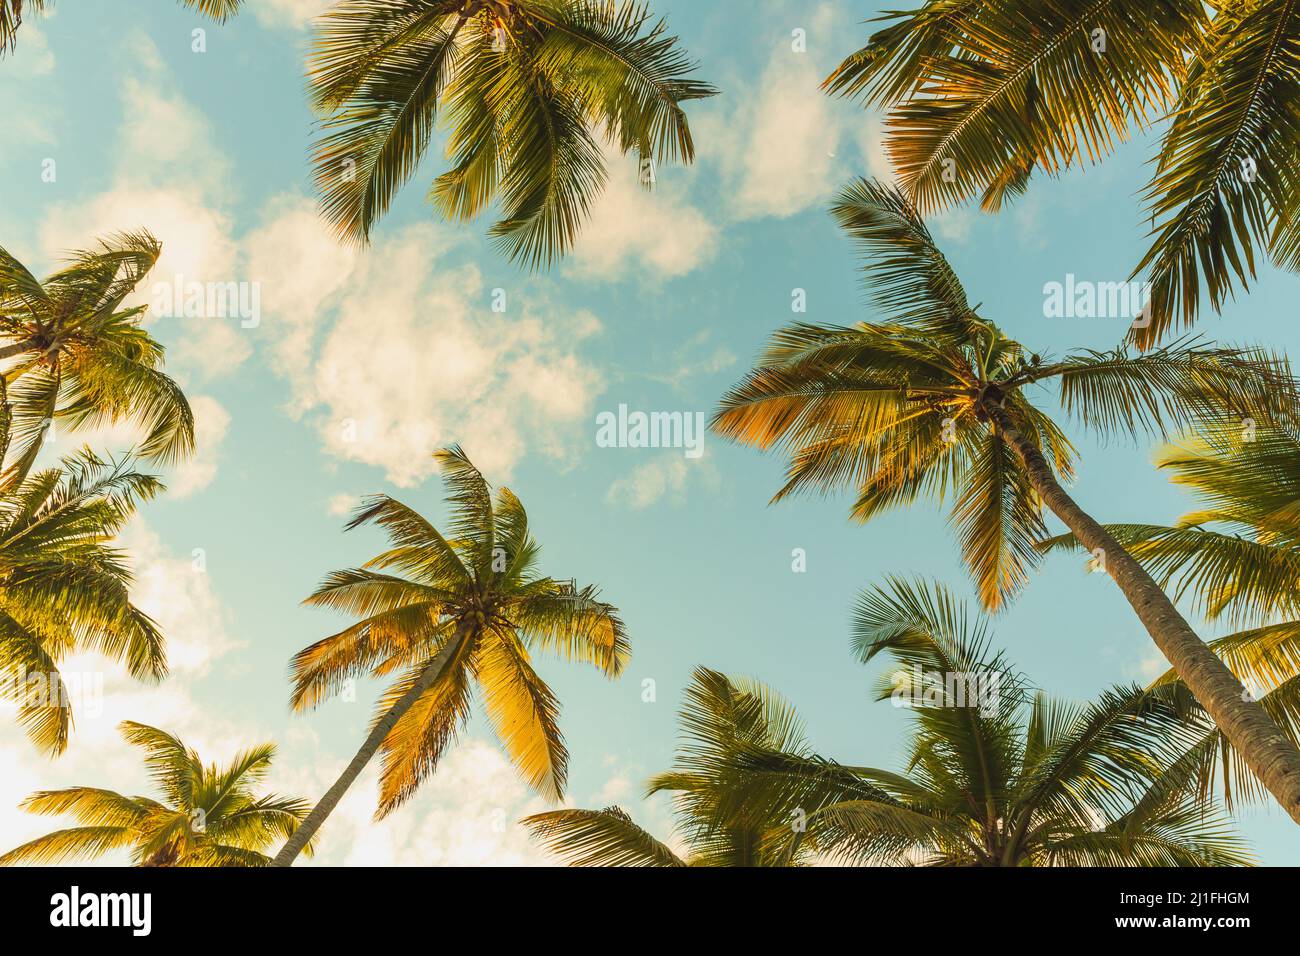 Kokospalmen stehen unter blau bewölktem Himmel. Stilisiertes Vintage-Foto mit Filtereffekt für Tonwertkorrektur Stockfoto